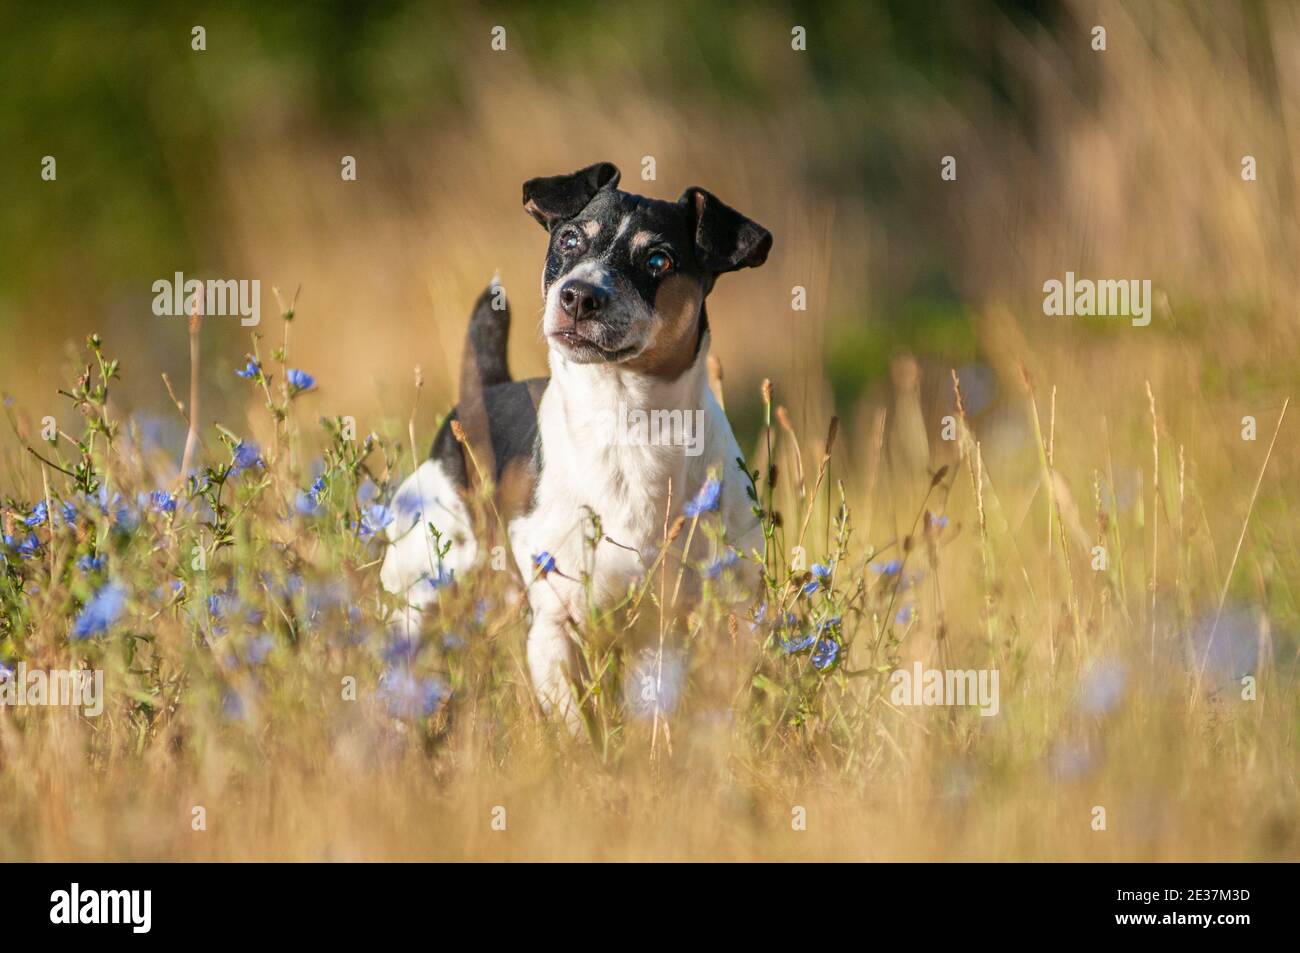 Vieux tricolore Jack Russell Terrier dans un environnement naturel. Le chien est aveugle et a une expression sérieuse Banque D'Images